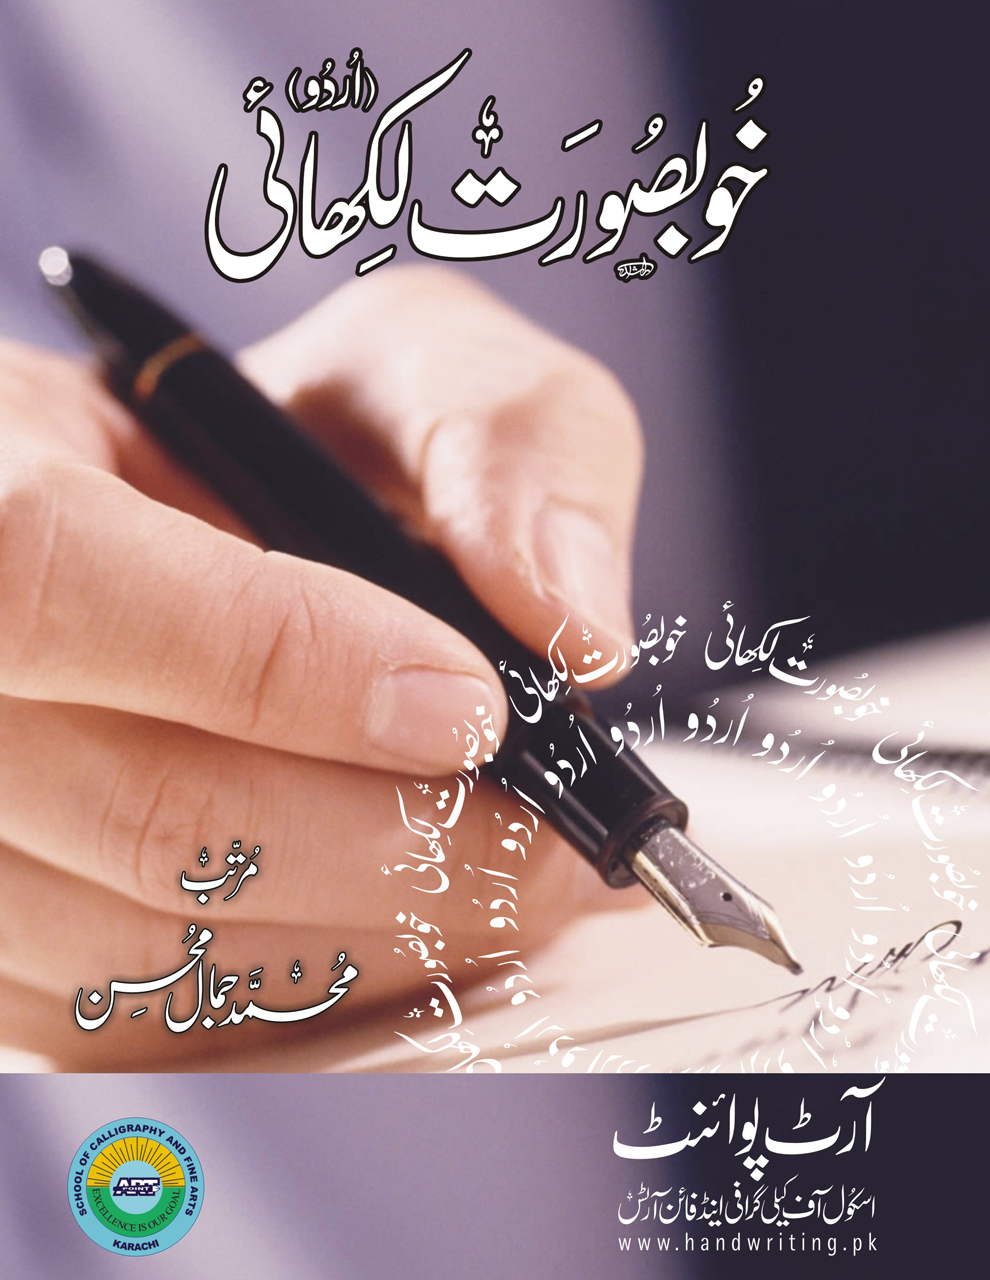 Urdu Writing Series